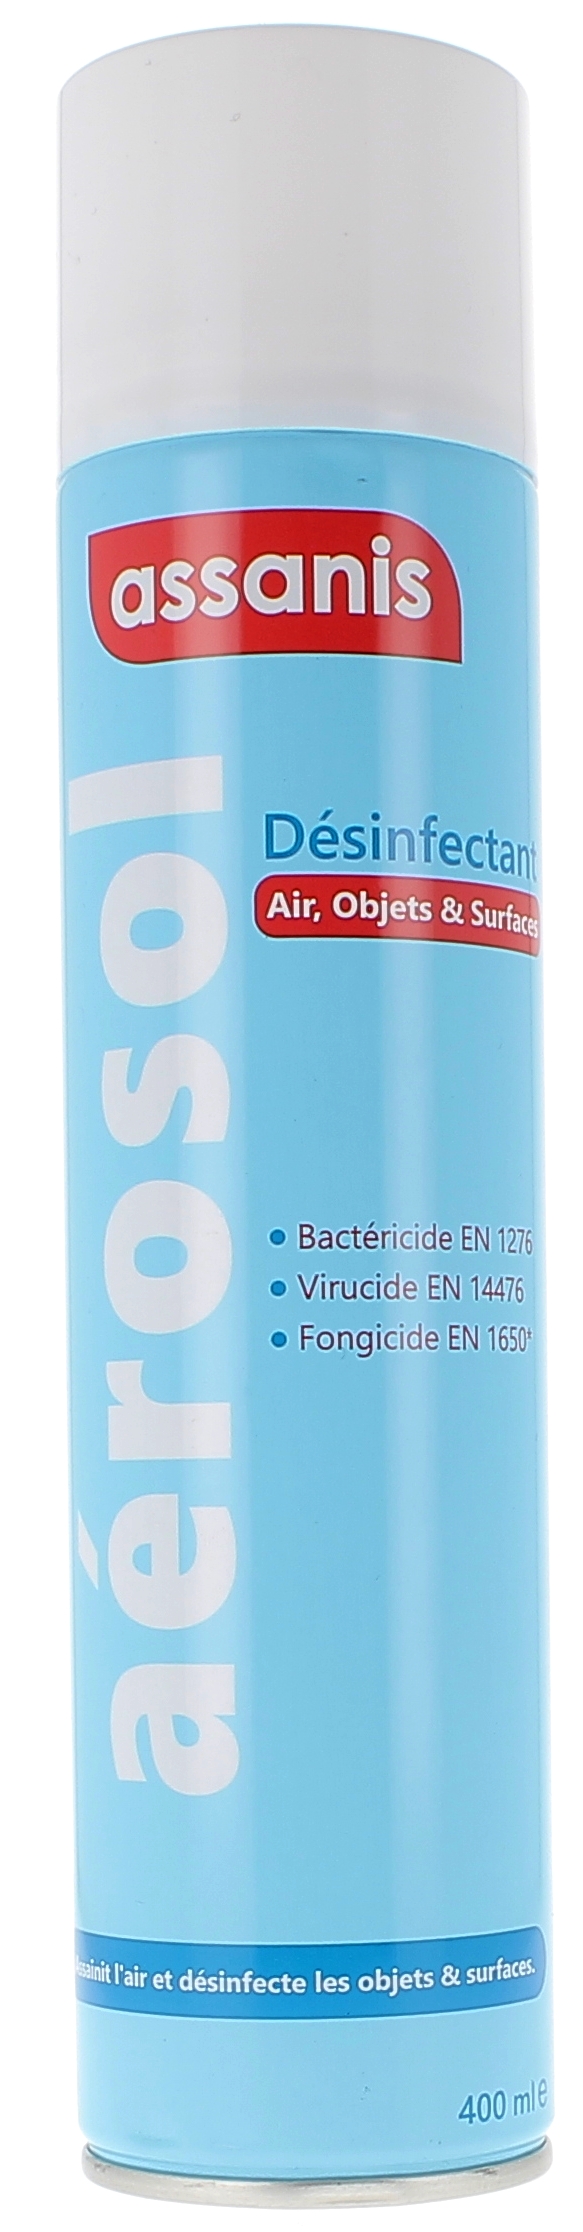 Aérosol désinfectant Assanis - spray de 400 ml